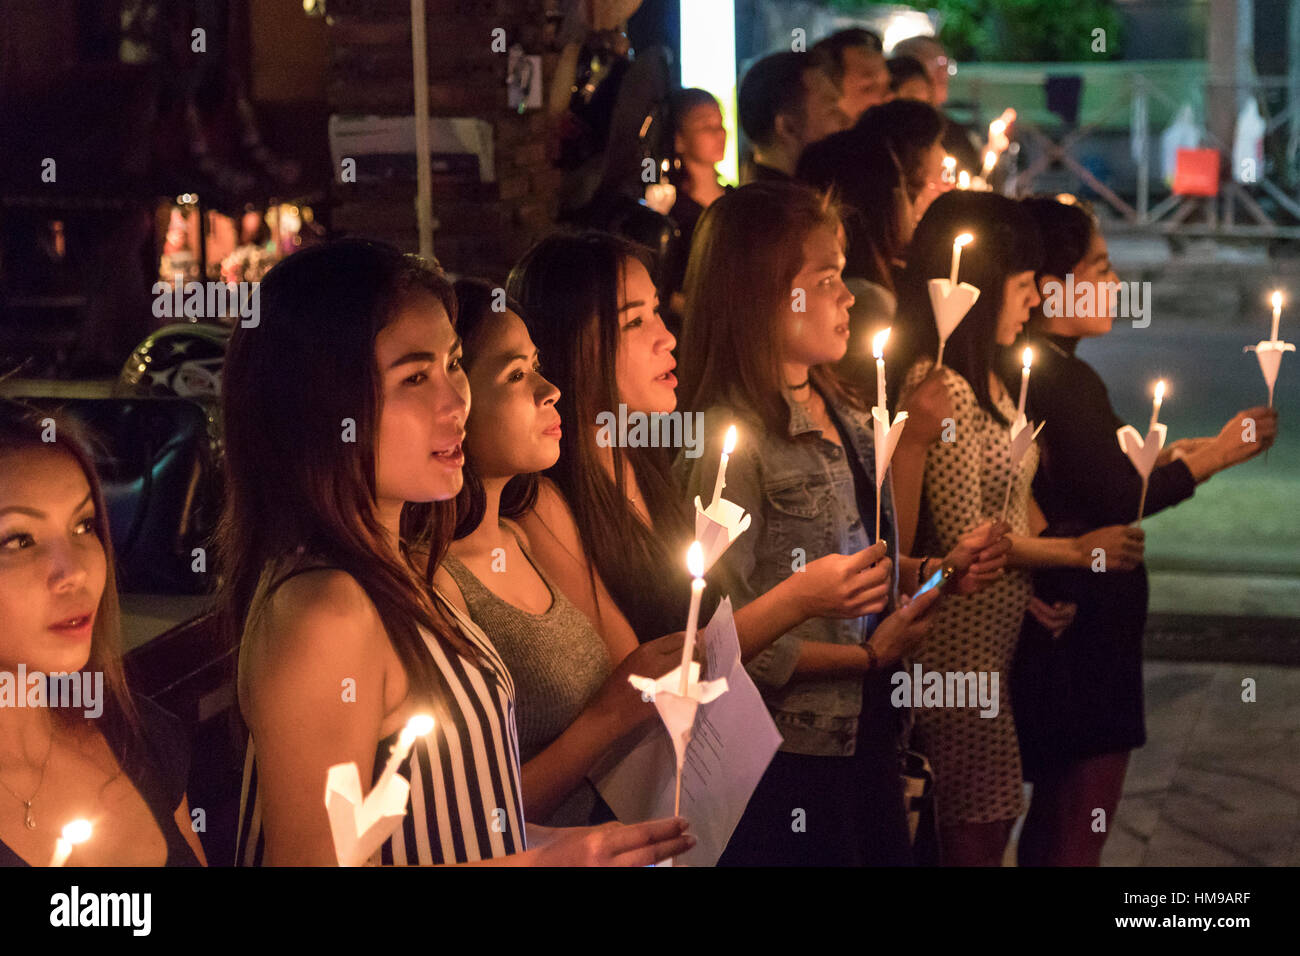 Thai girl pleureuses chantent sur l'anniversaire du roi Bhumibol Adulyadej, Bangkok, Thaïlande Banque D'Images